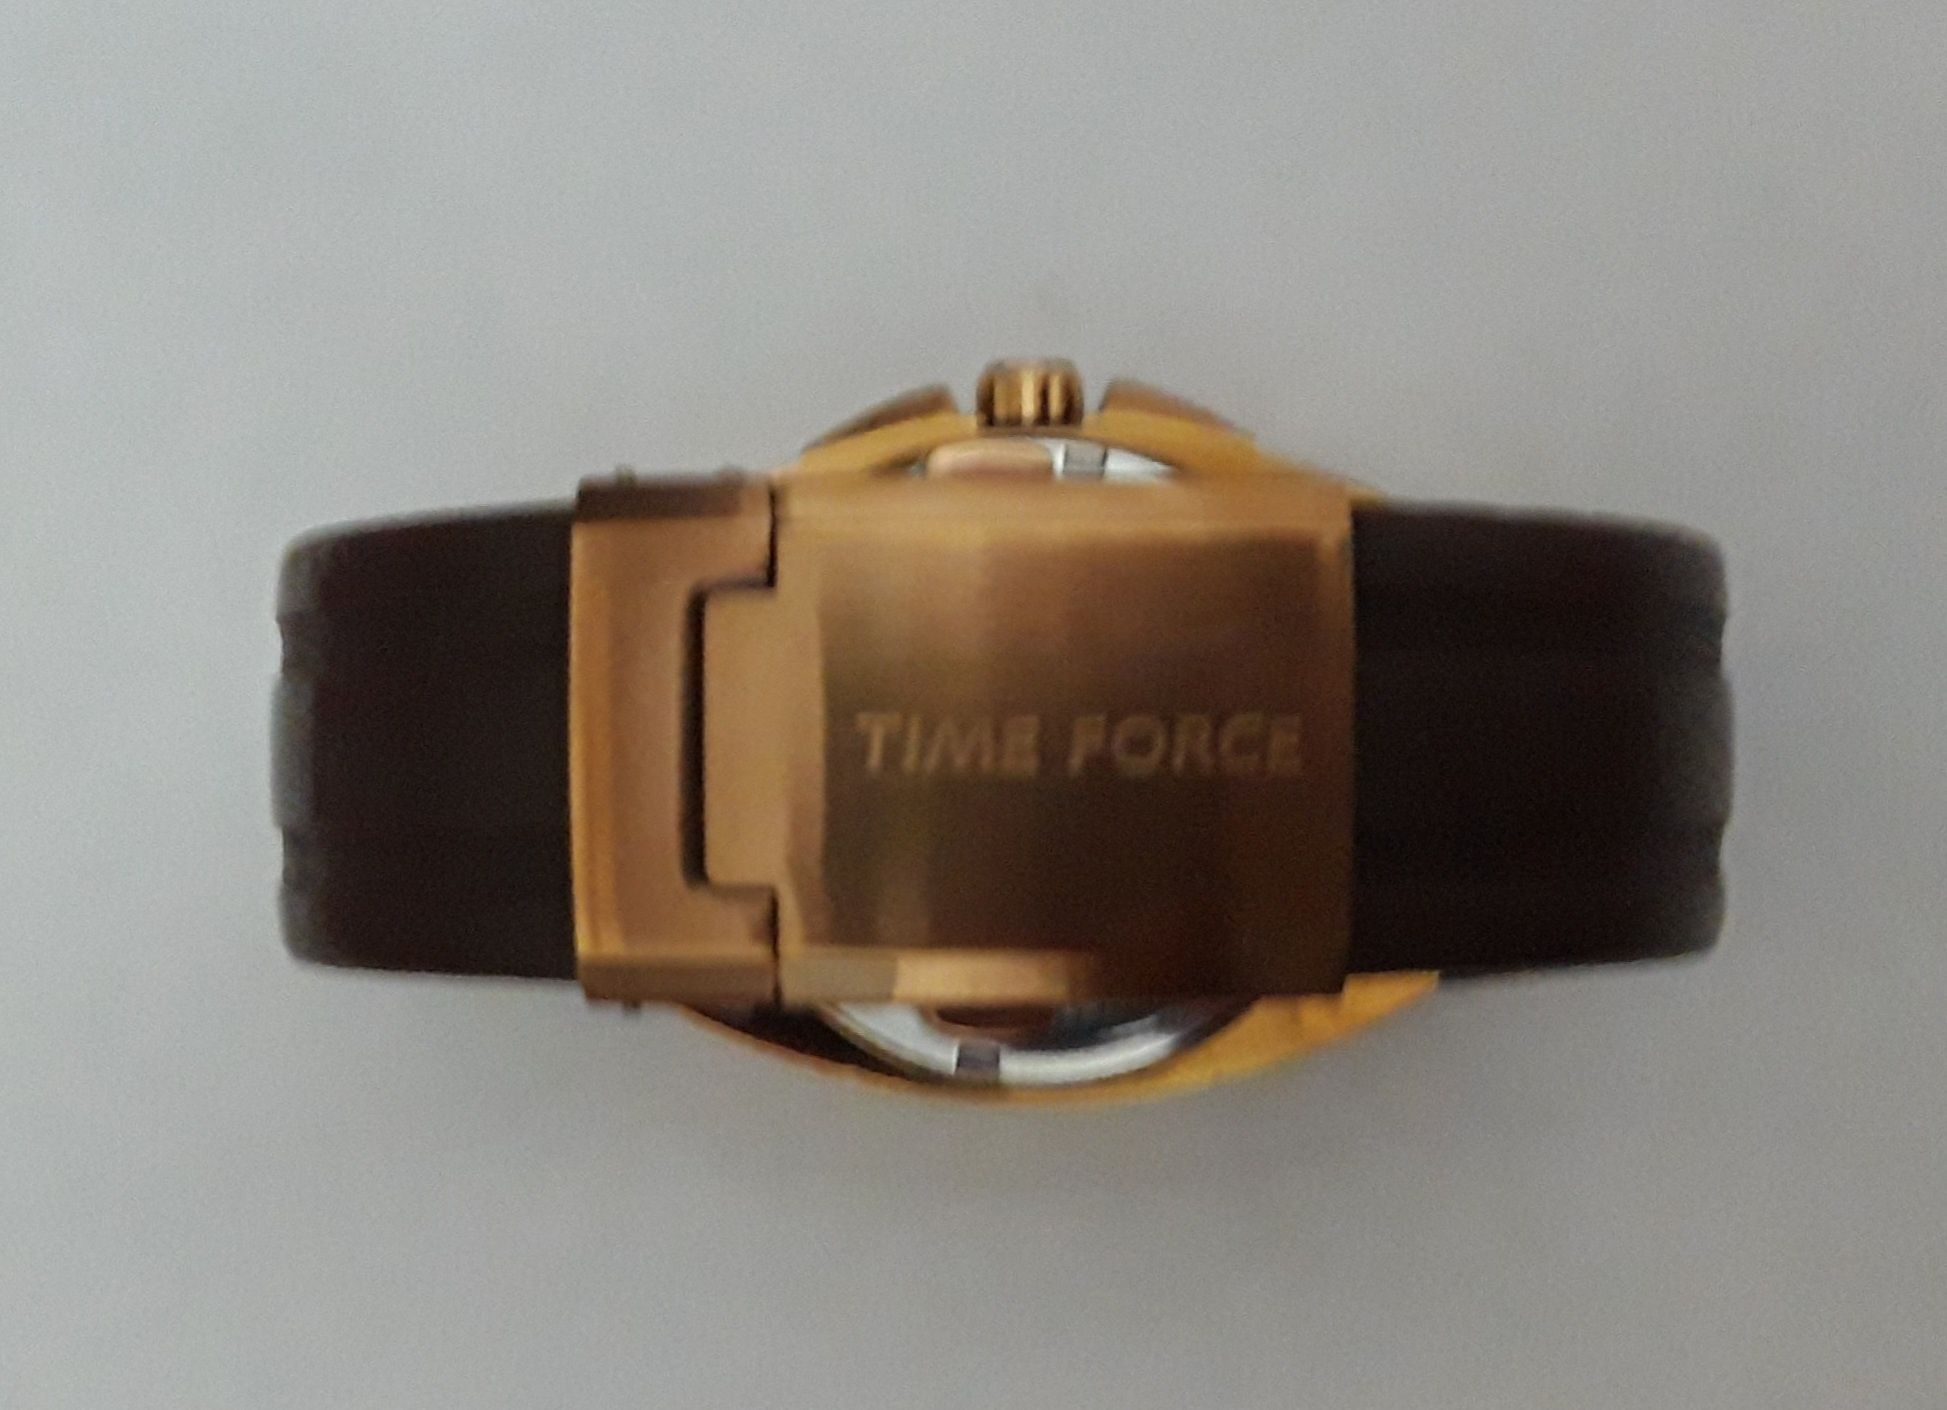 Ручные часы позалочанные, марка TIME FORCE, батарейчные